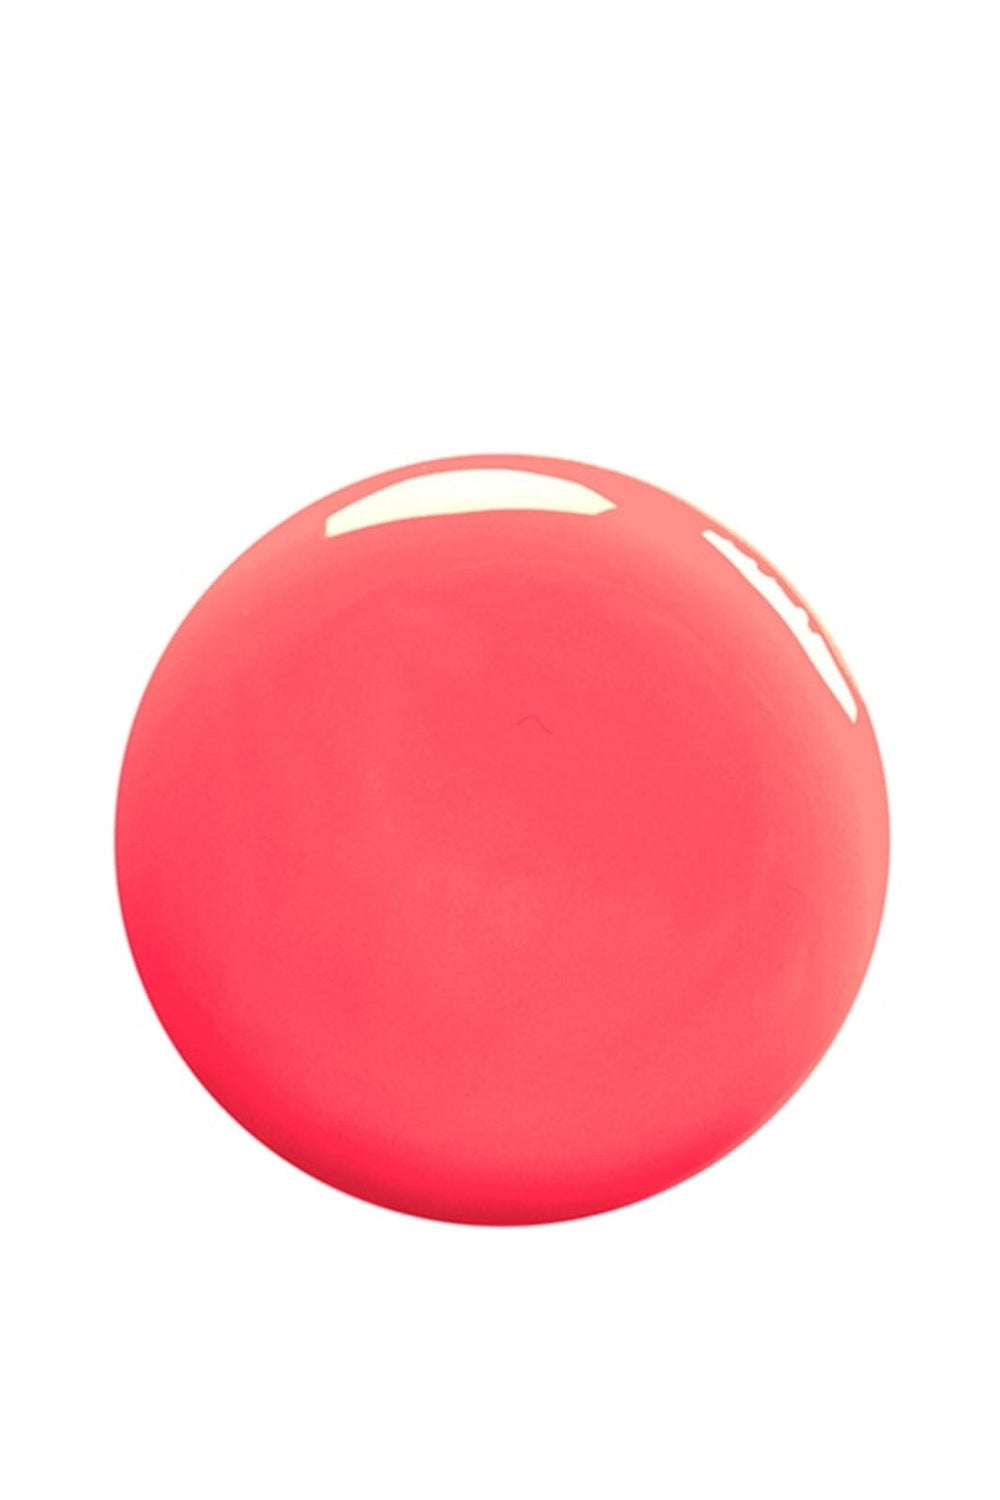 Nailberry - Bubble gum 15 ml - Neglelak Neglelak 